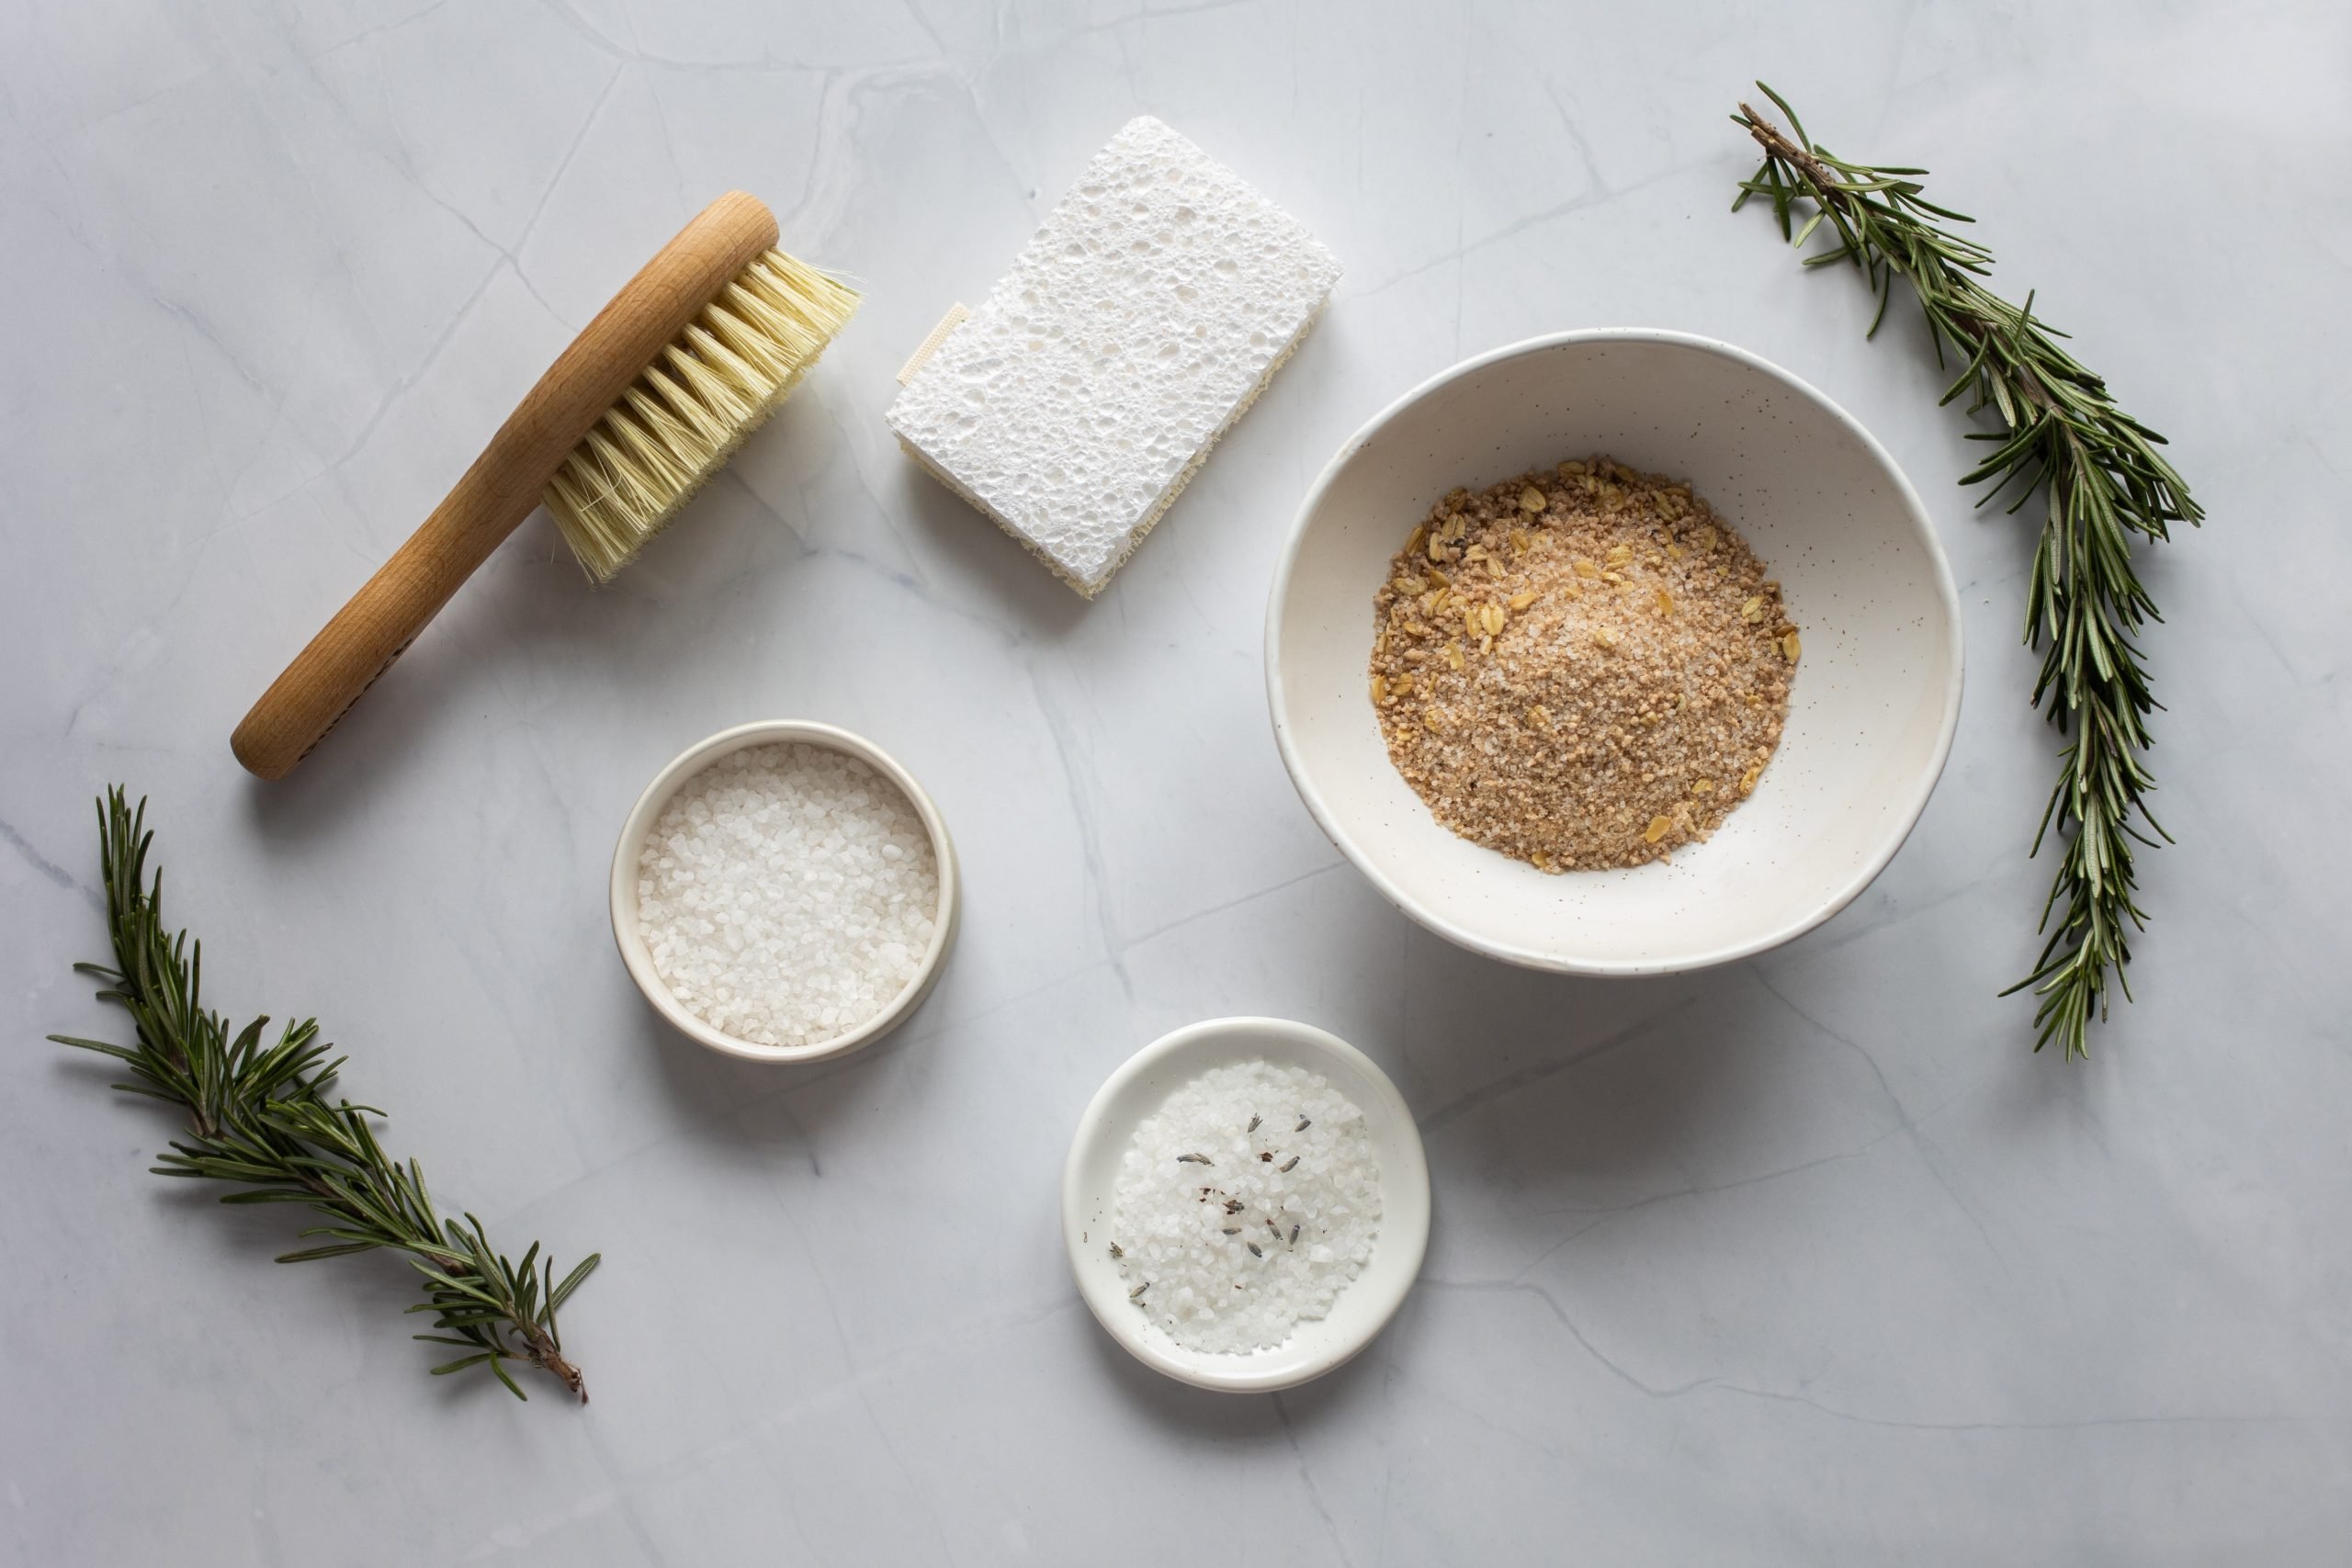 bucha e escova de banho com potes de sal e açúcar e ramos de alecrim espalhados em uma superfície branca